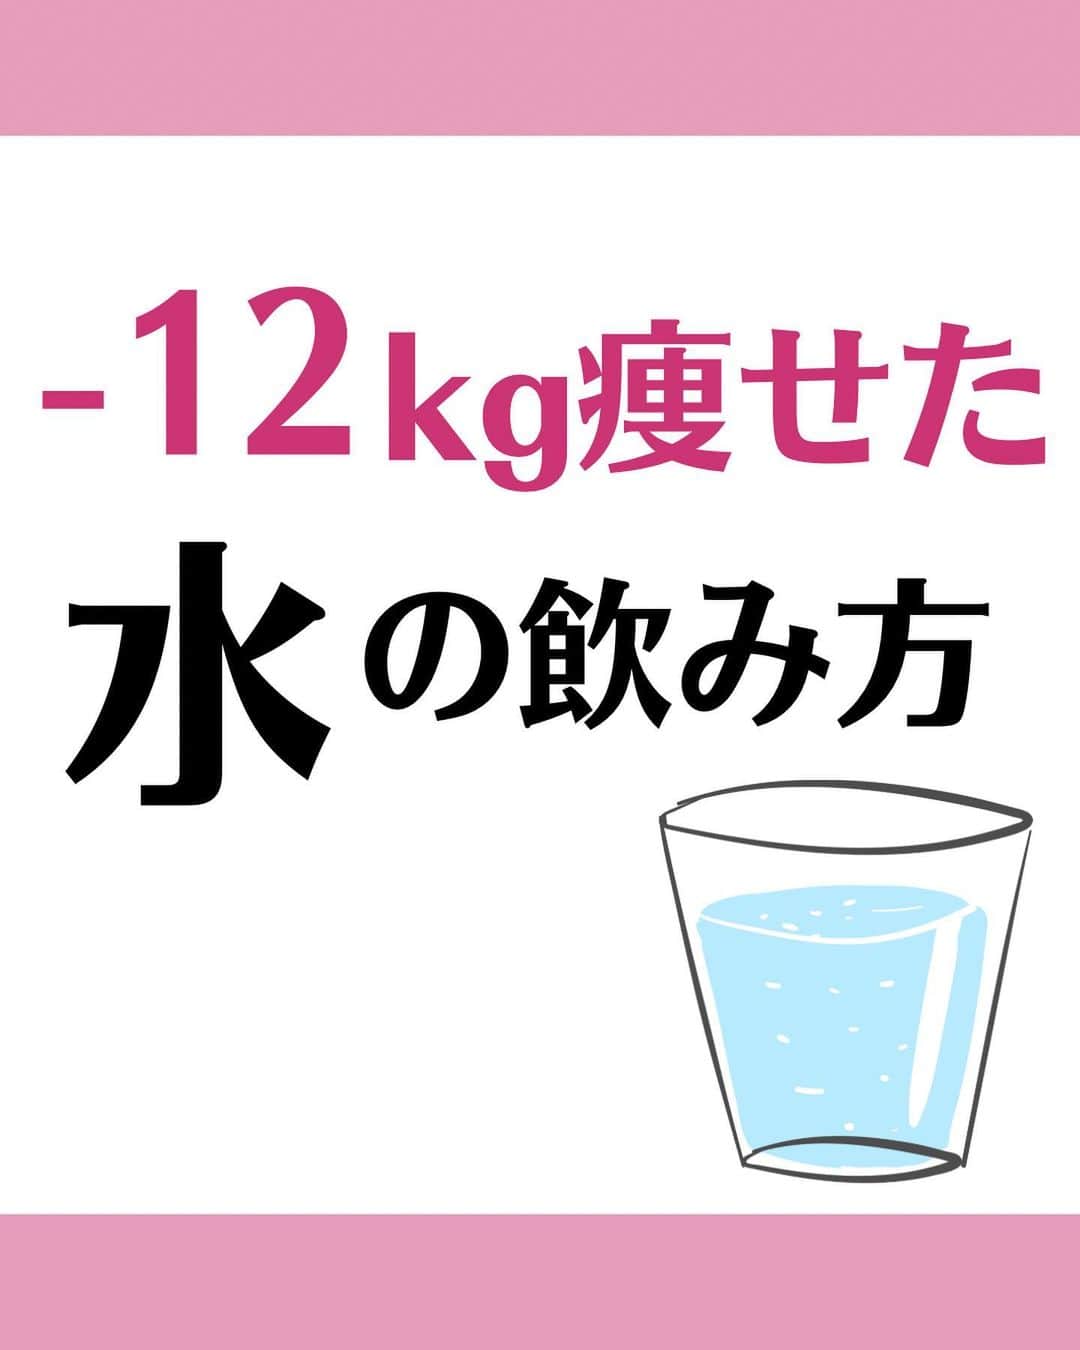 松田リエのインスタグラム：「@matsuda_rie8 ◀︎他の投稿  【痩せる水の飲み方】 ・朝起きてすぐ ・お風呂の前後 ・トイレのあと ・夜眠る直前 ・一度に飲むのはコップ一杯 ・最強の水は硬水  ただの水とはいえ 飲み方に気をつければ ダイエット効果も引き出せます。  ぜひ今日から今知った飲み方を 実践してみてくださいね！  __________  このアカウントは 趣味ダイエット 特技リバウンドだった私が  『3食しっかり食べて-12㎏痩せた方法』 を発信しています。  1人でも多くの人が 辛いダイエットから解放され 明るい未来を手に入れられるように 正しいダイエットの方法をお伝えしていきます。  @matsuda_rie8 ◀︎-12㎏の食べて痩せるダイエット法  __________  2500人が成功した 【ベルラスダイエット3ヶ月講座】の 公式アカウントはこちら↓ @bls.academy   #ダイエット  #ダイエットメニュー  #食べ痩せダイエット  #食べて痩せるダイエット  #ダイエットレシピ」